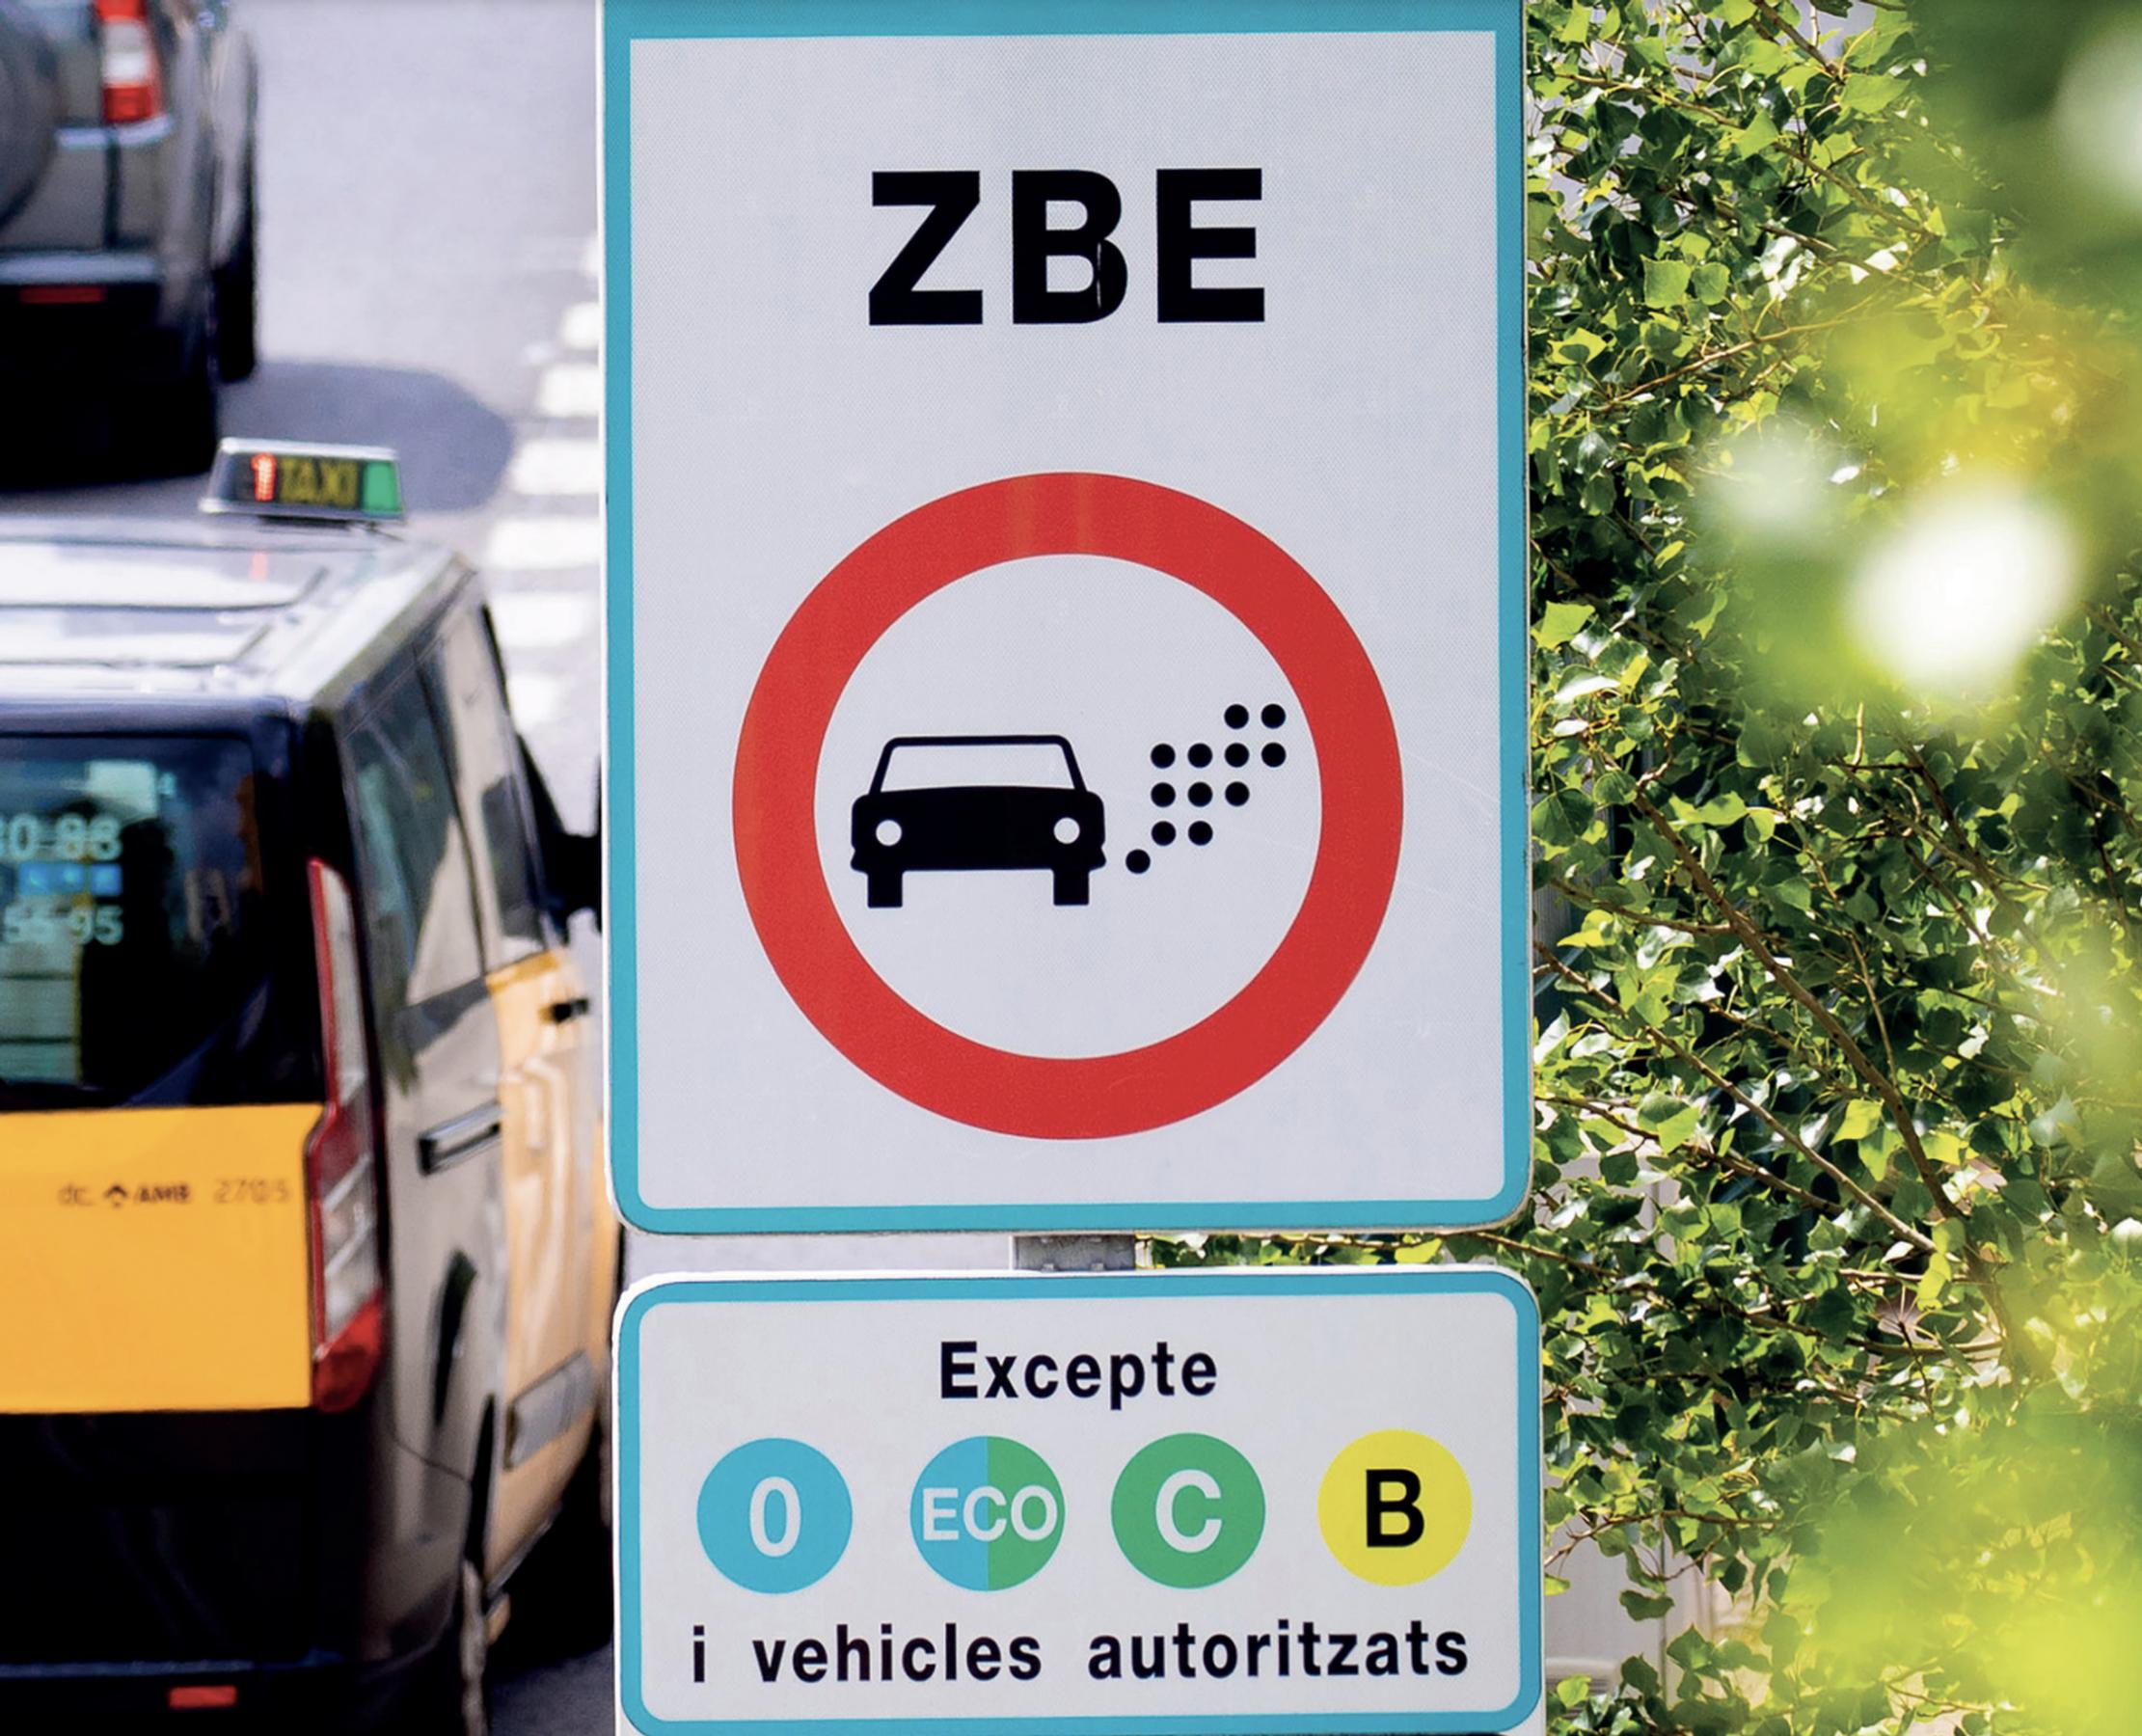 În atenția românilor care călătoresc. Au fost anunțate noile indicatoare rutiere spaniole pentru 2023. Cum arată ele